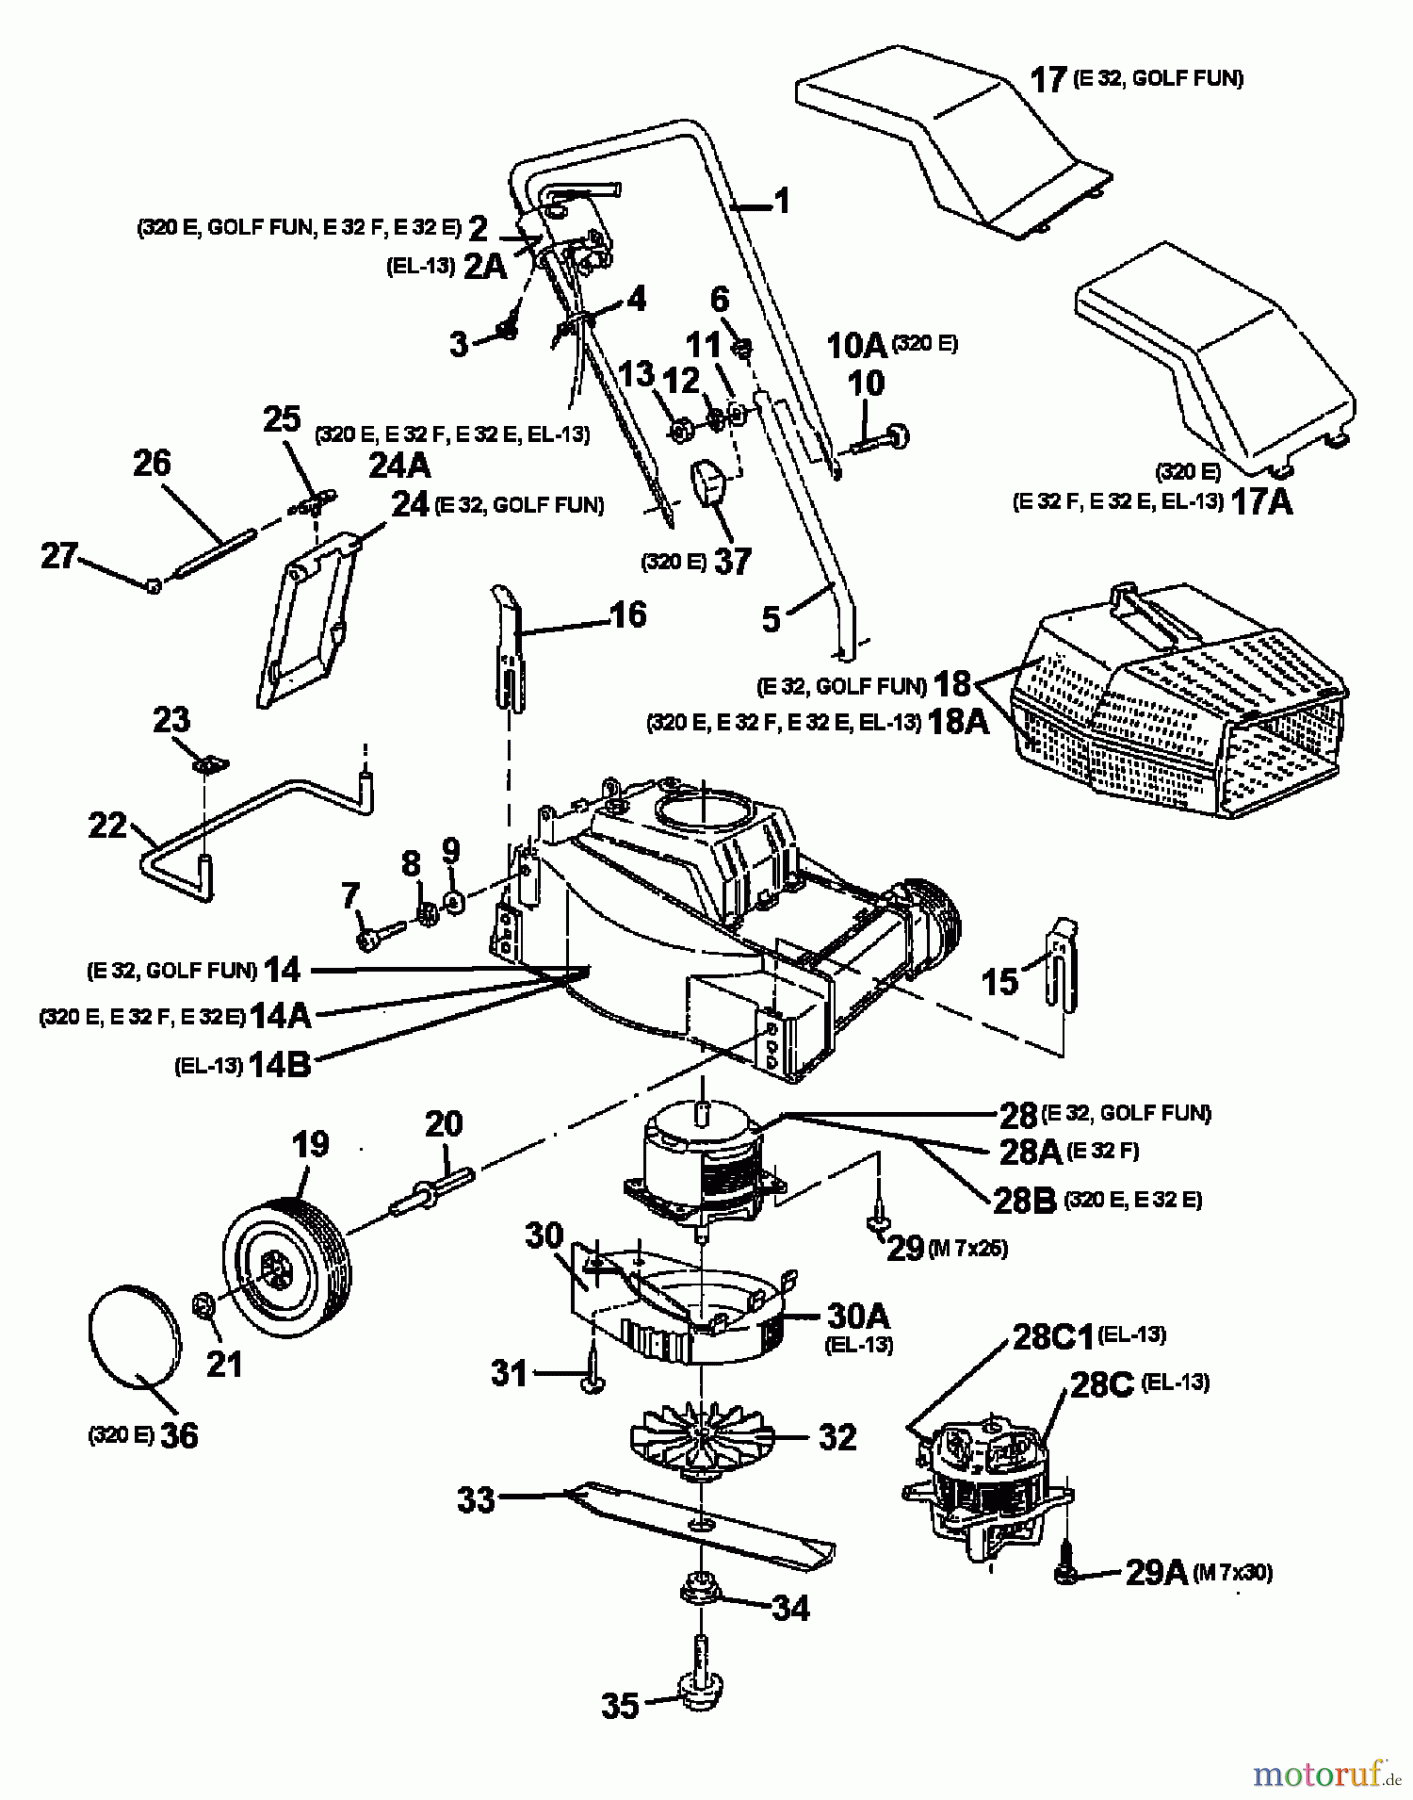  MTD Elektromäher E 32 E 18A-A0C-678  (1998) Grundgerät